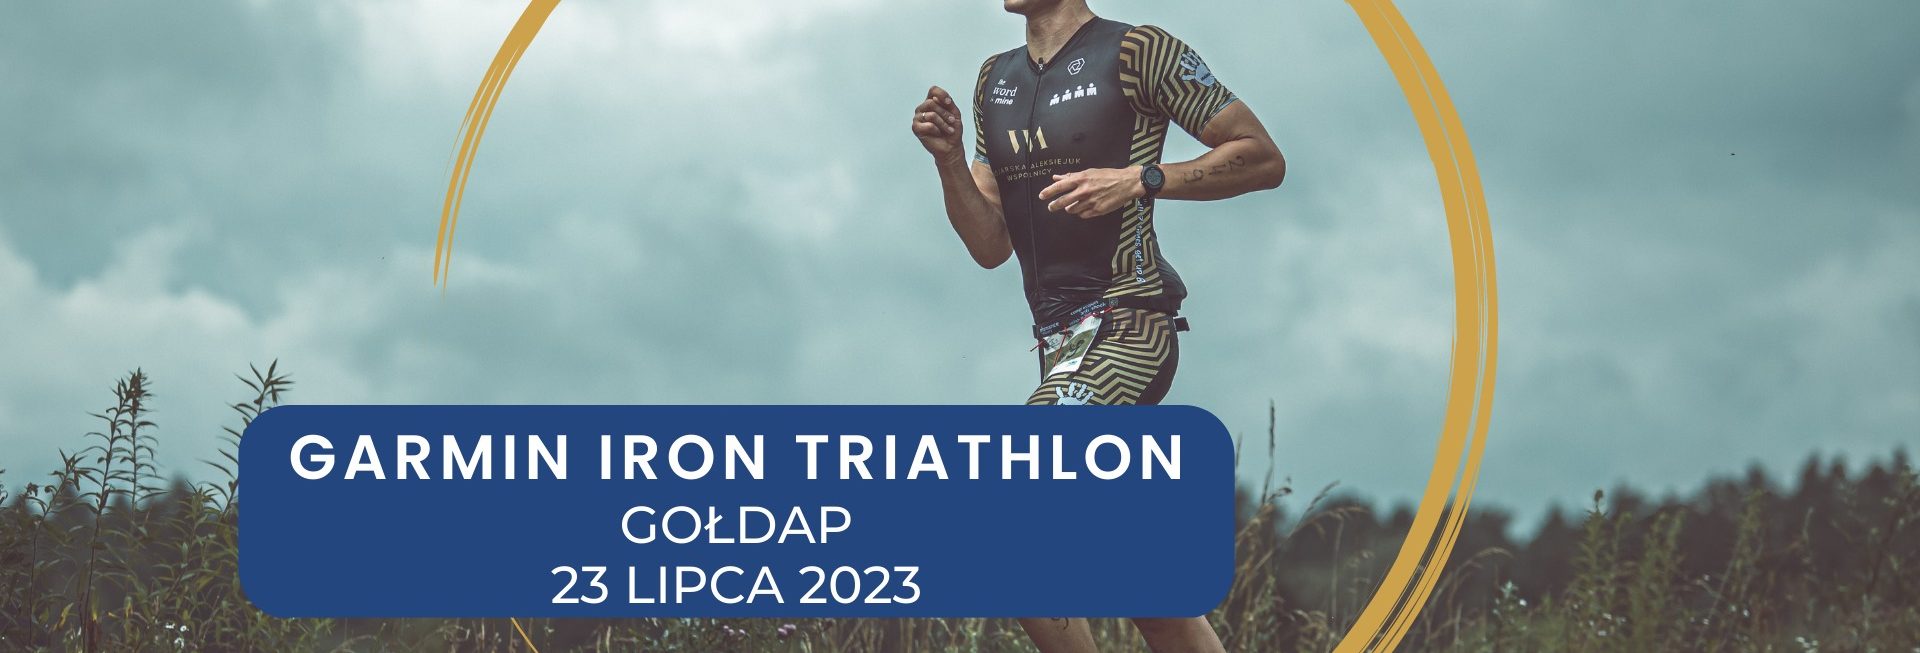 Plakat zapraszający do Gołdapi na 12. edycję imprezy sportowej Garmin Iron Triathlon Gołdap 2023.